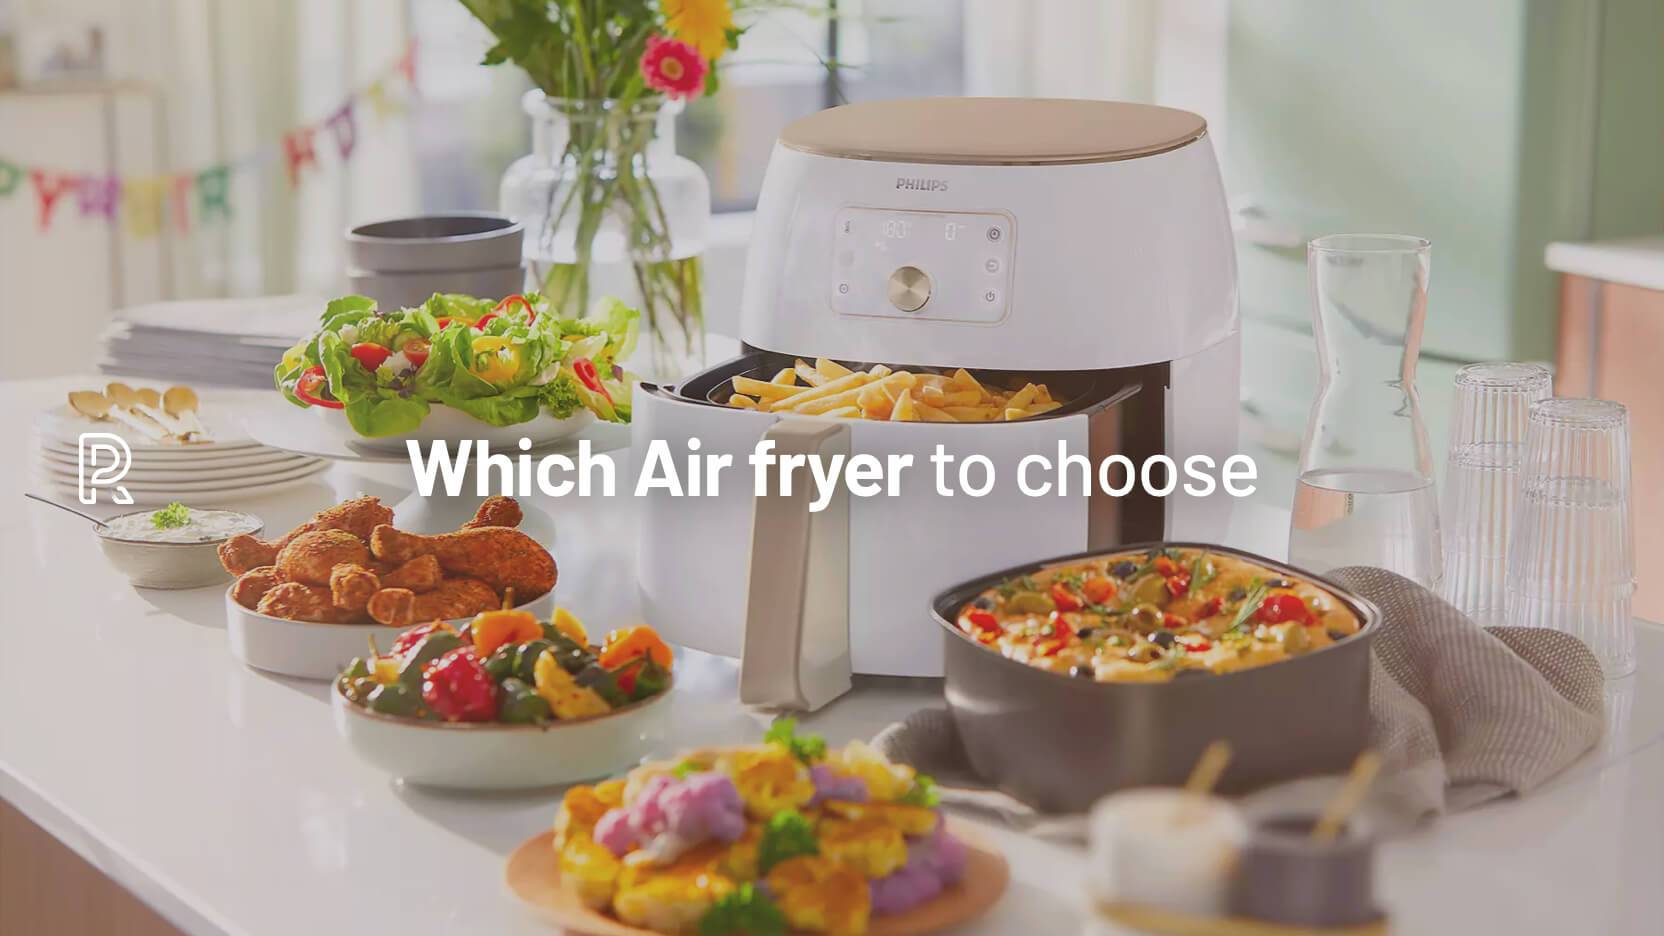 Ninja Foodi vs Tower Air fryer vs Tefal Actifry: Which Air Fryer